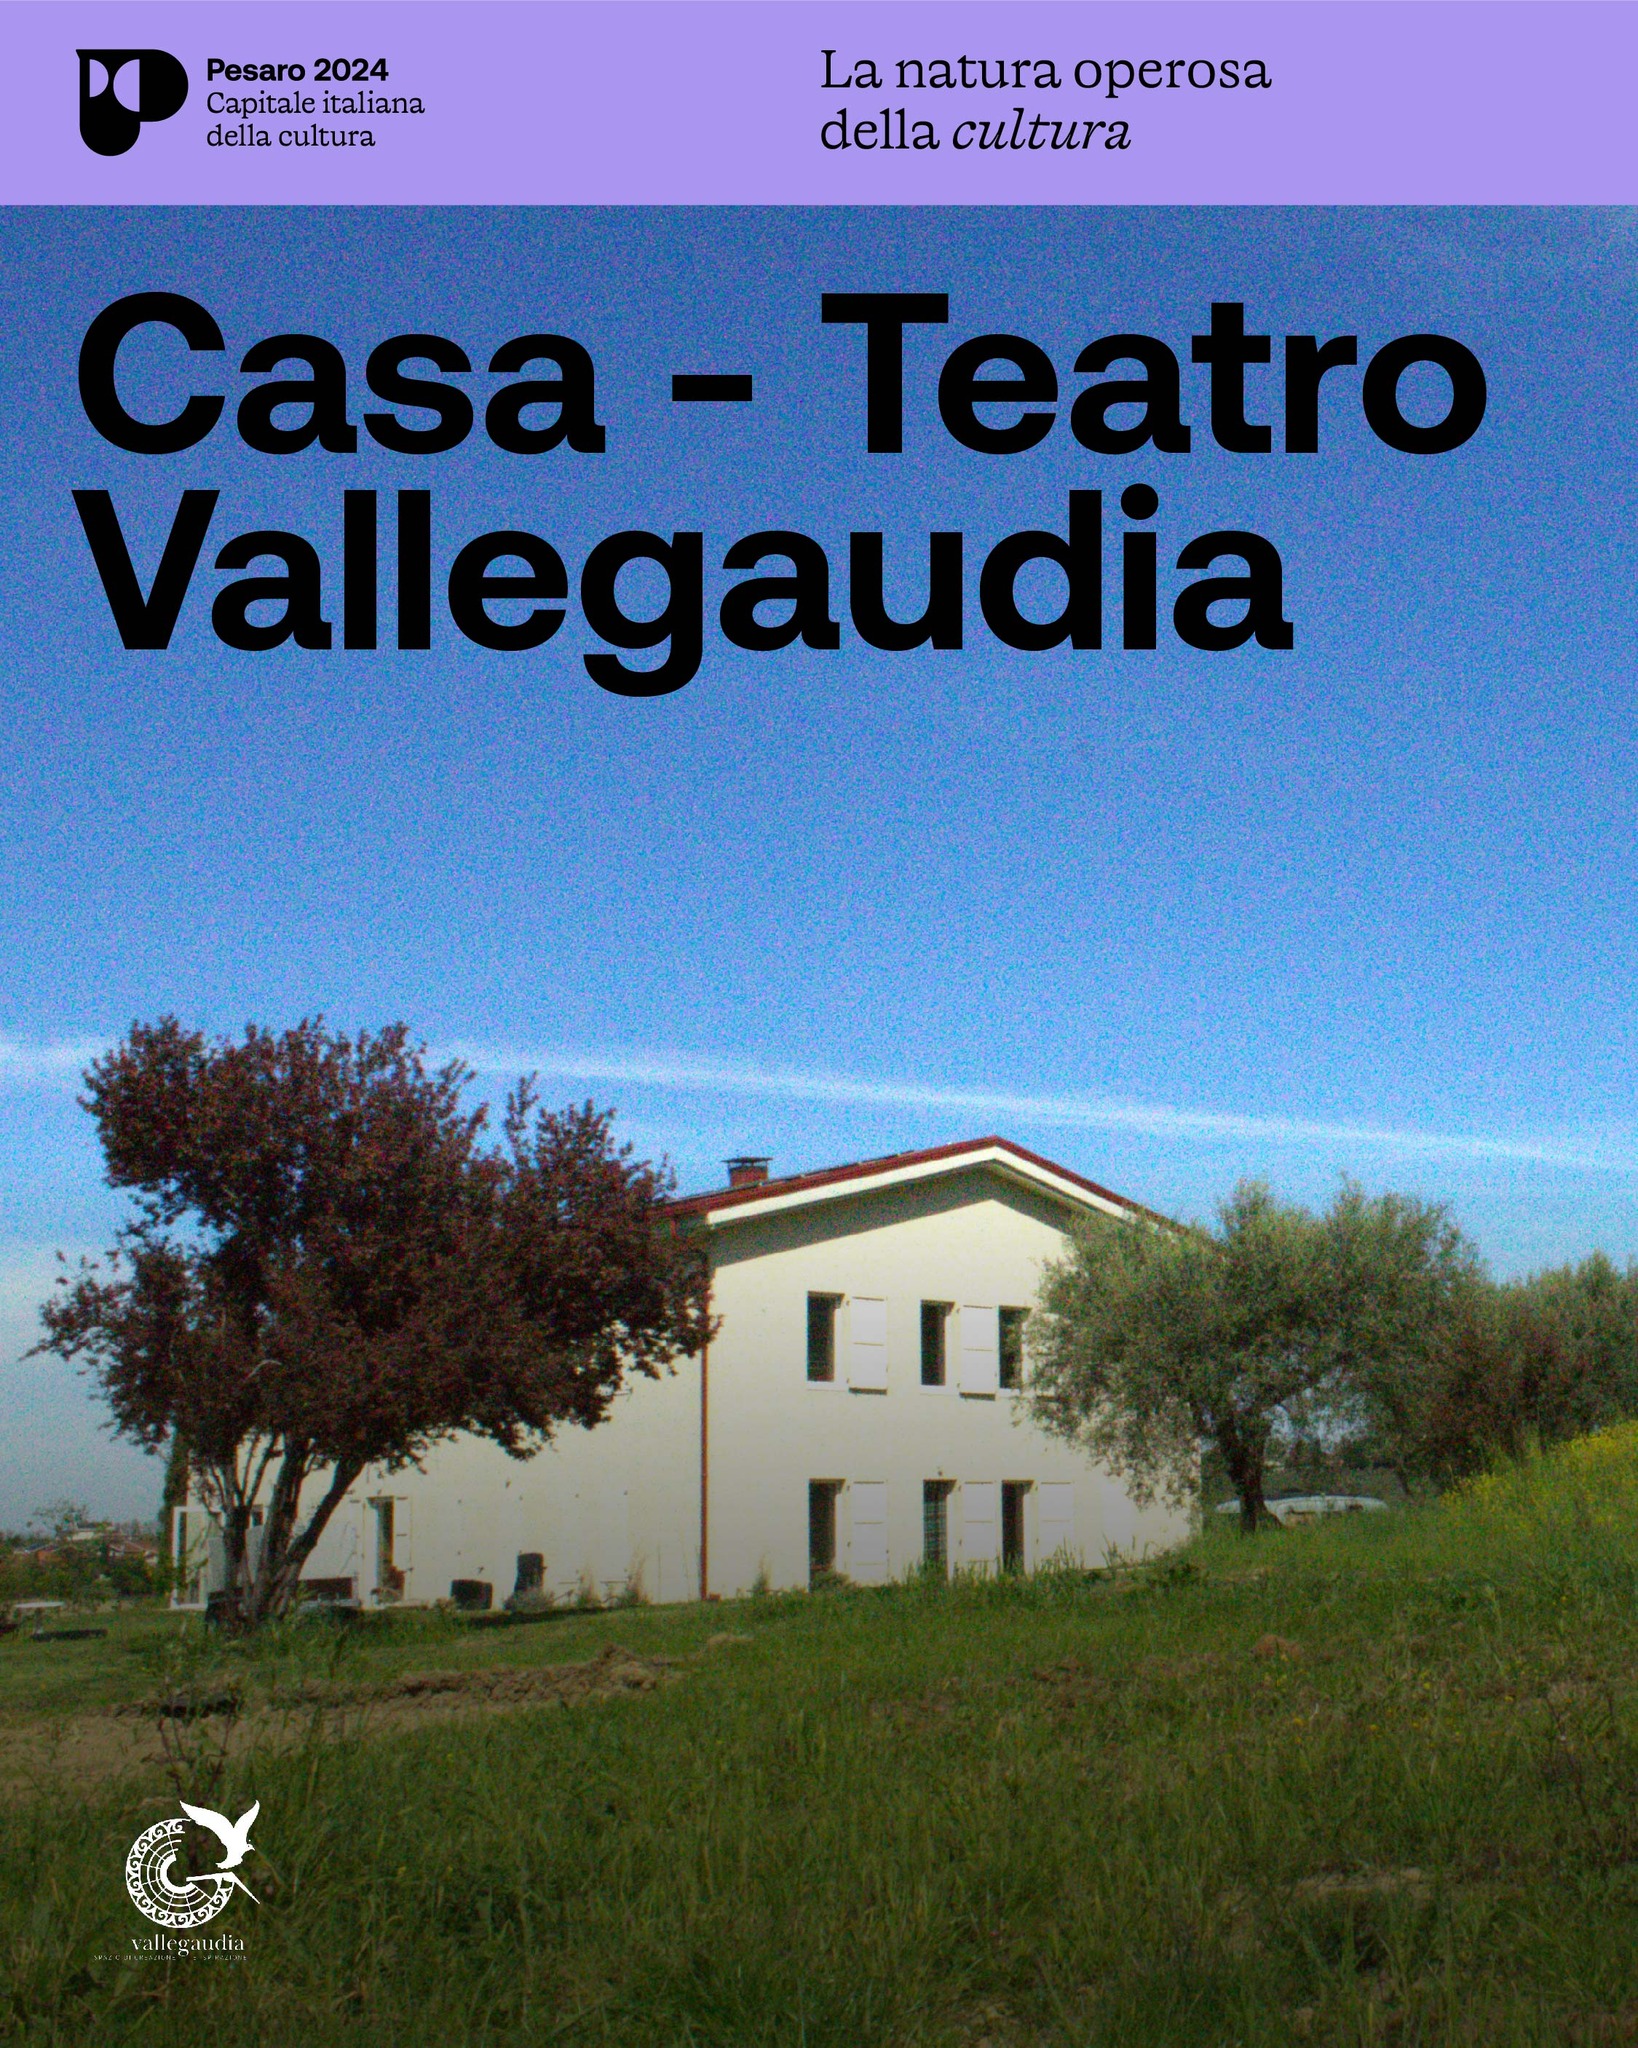 Casa-Teatro Vallegaudia